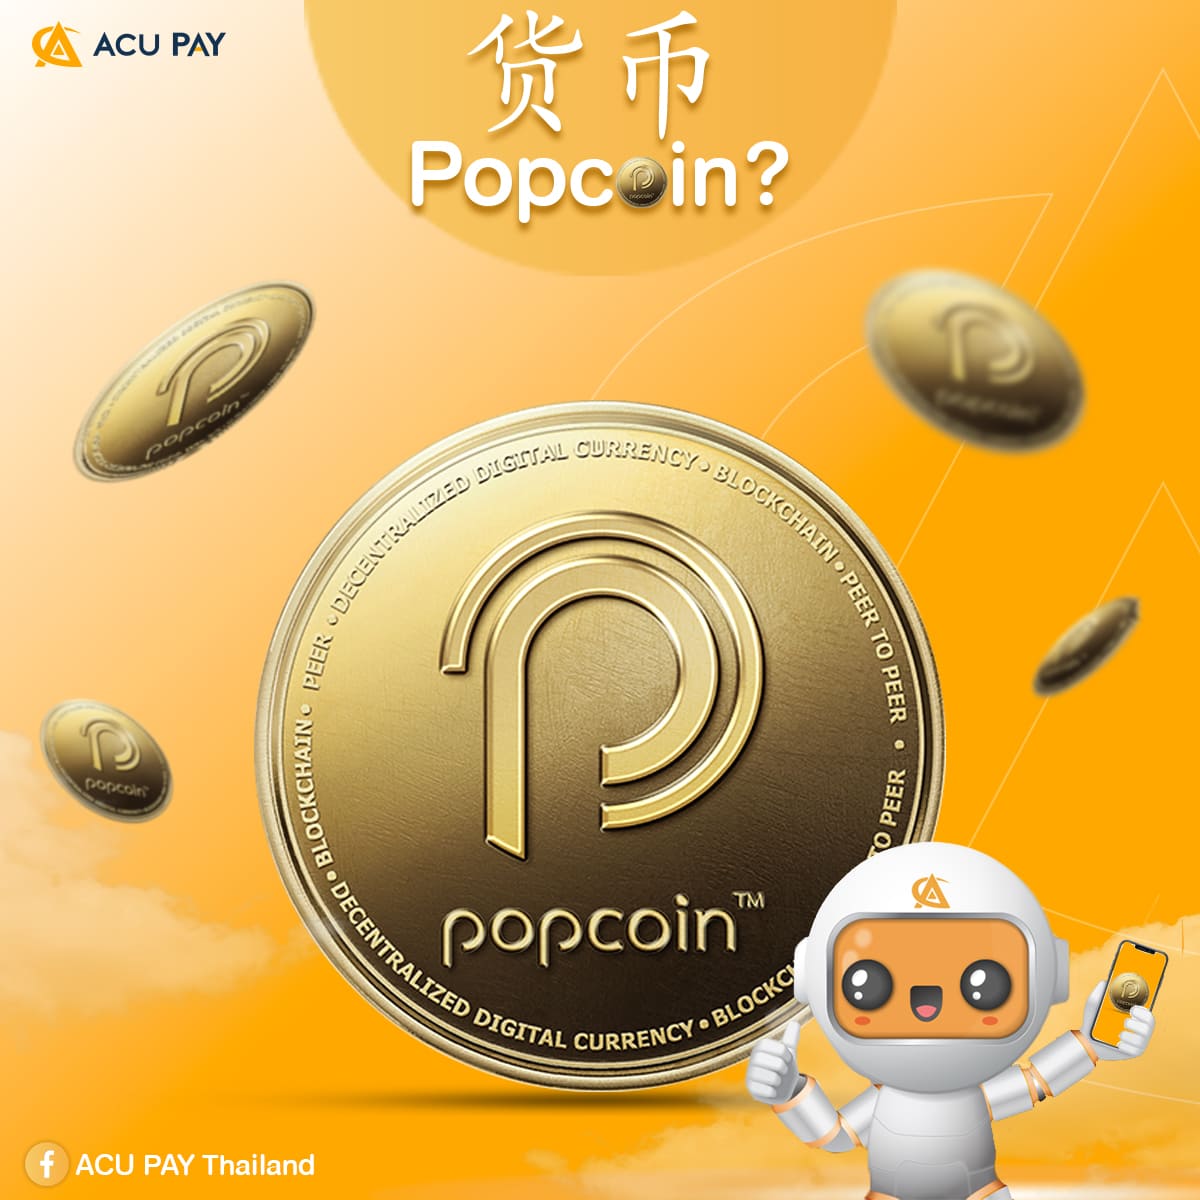 什么是Popcoin 数字货币？它有什么优点？